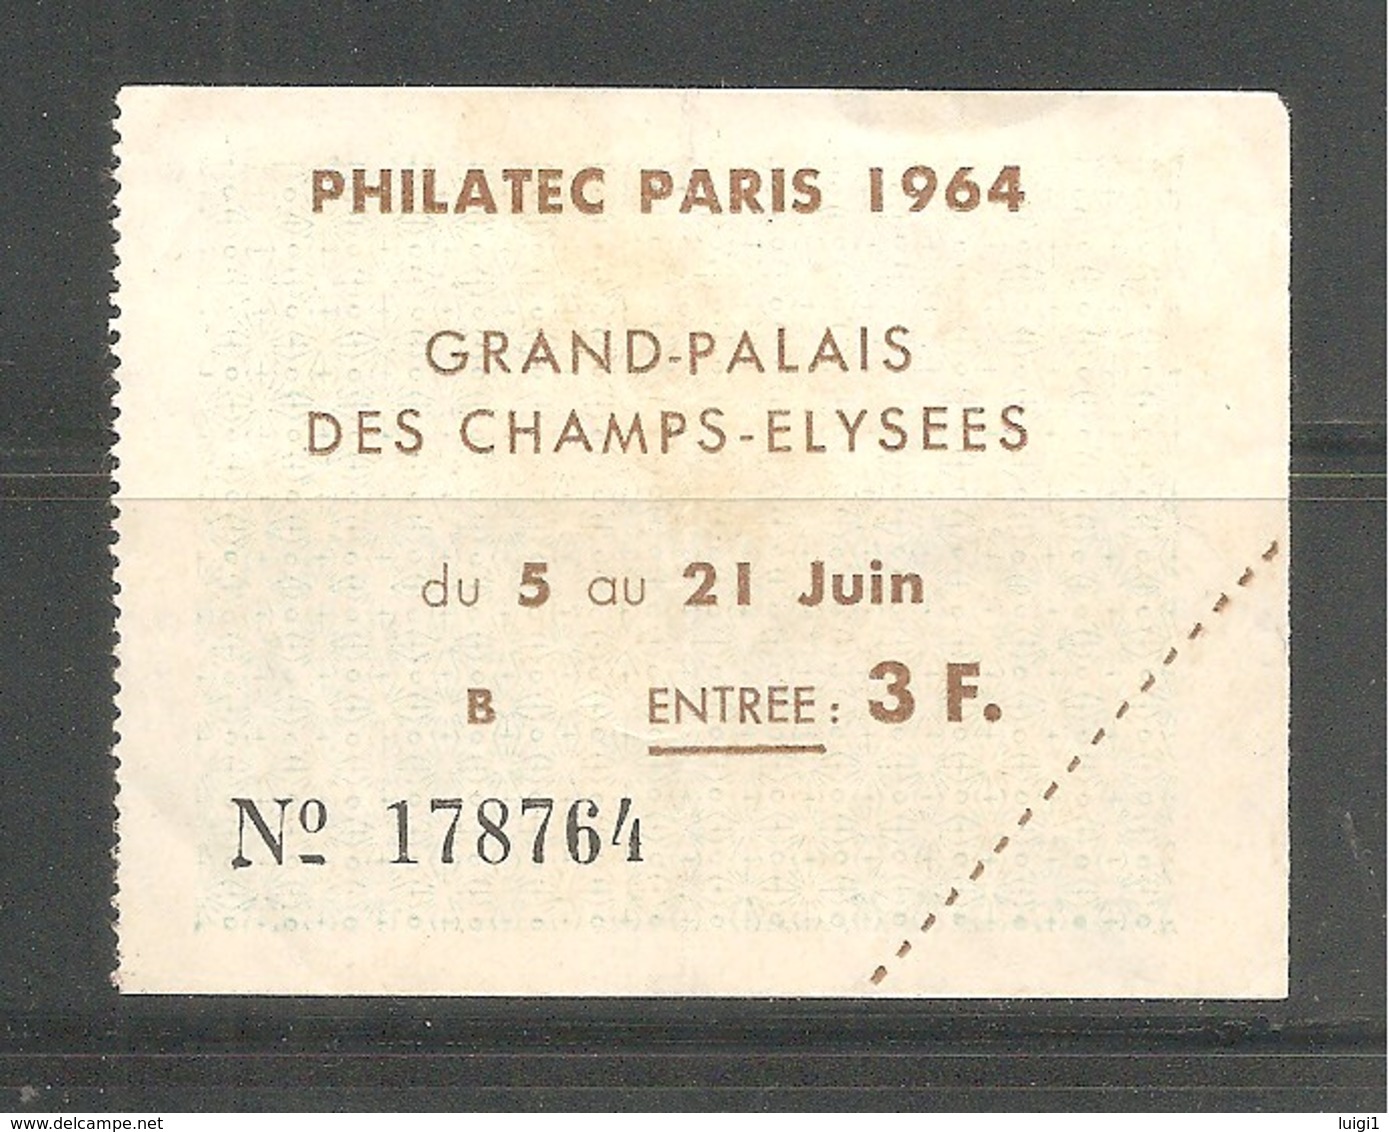 Billet D' ENTREE . PHILATEC PARIS 1964 - Grand Palais Des Champs-Elysées Du 5 Au 21 Juin 1964. - Expositions Philatéliques